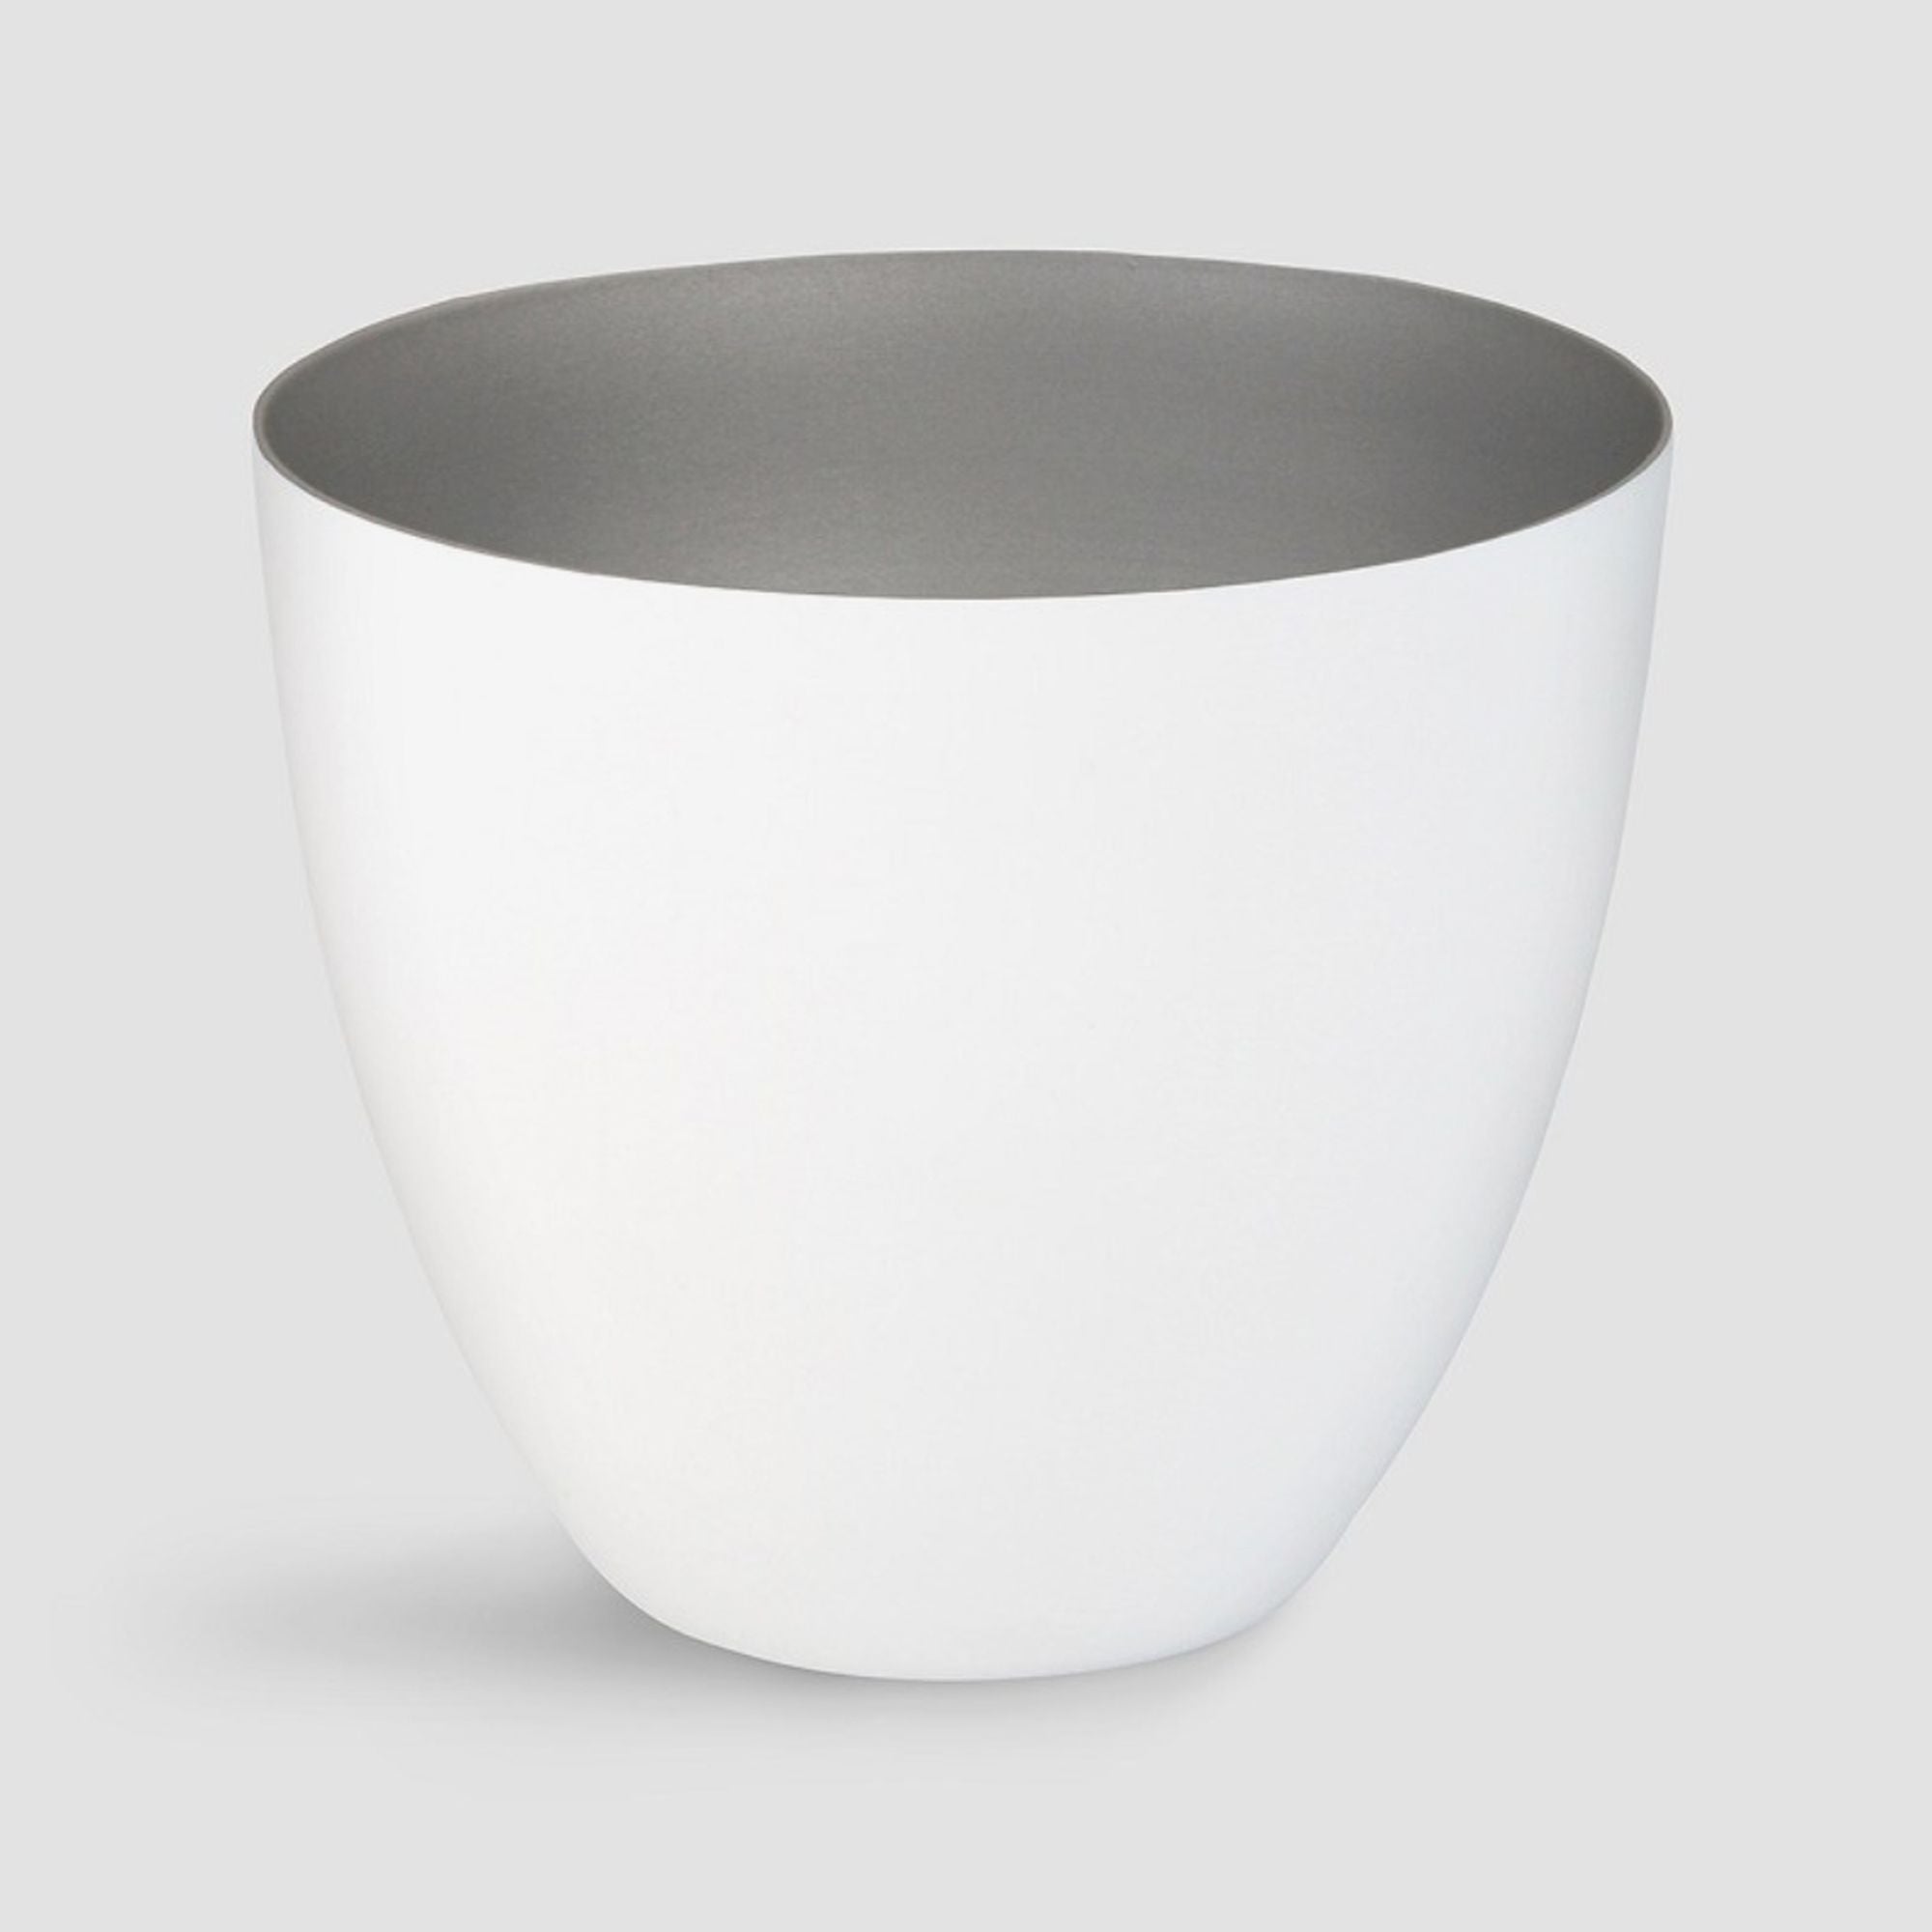 Teelichthalter aus feinem Porzellan in zwei Größen - weiß